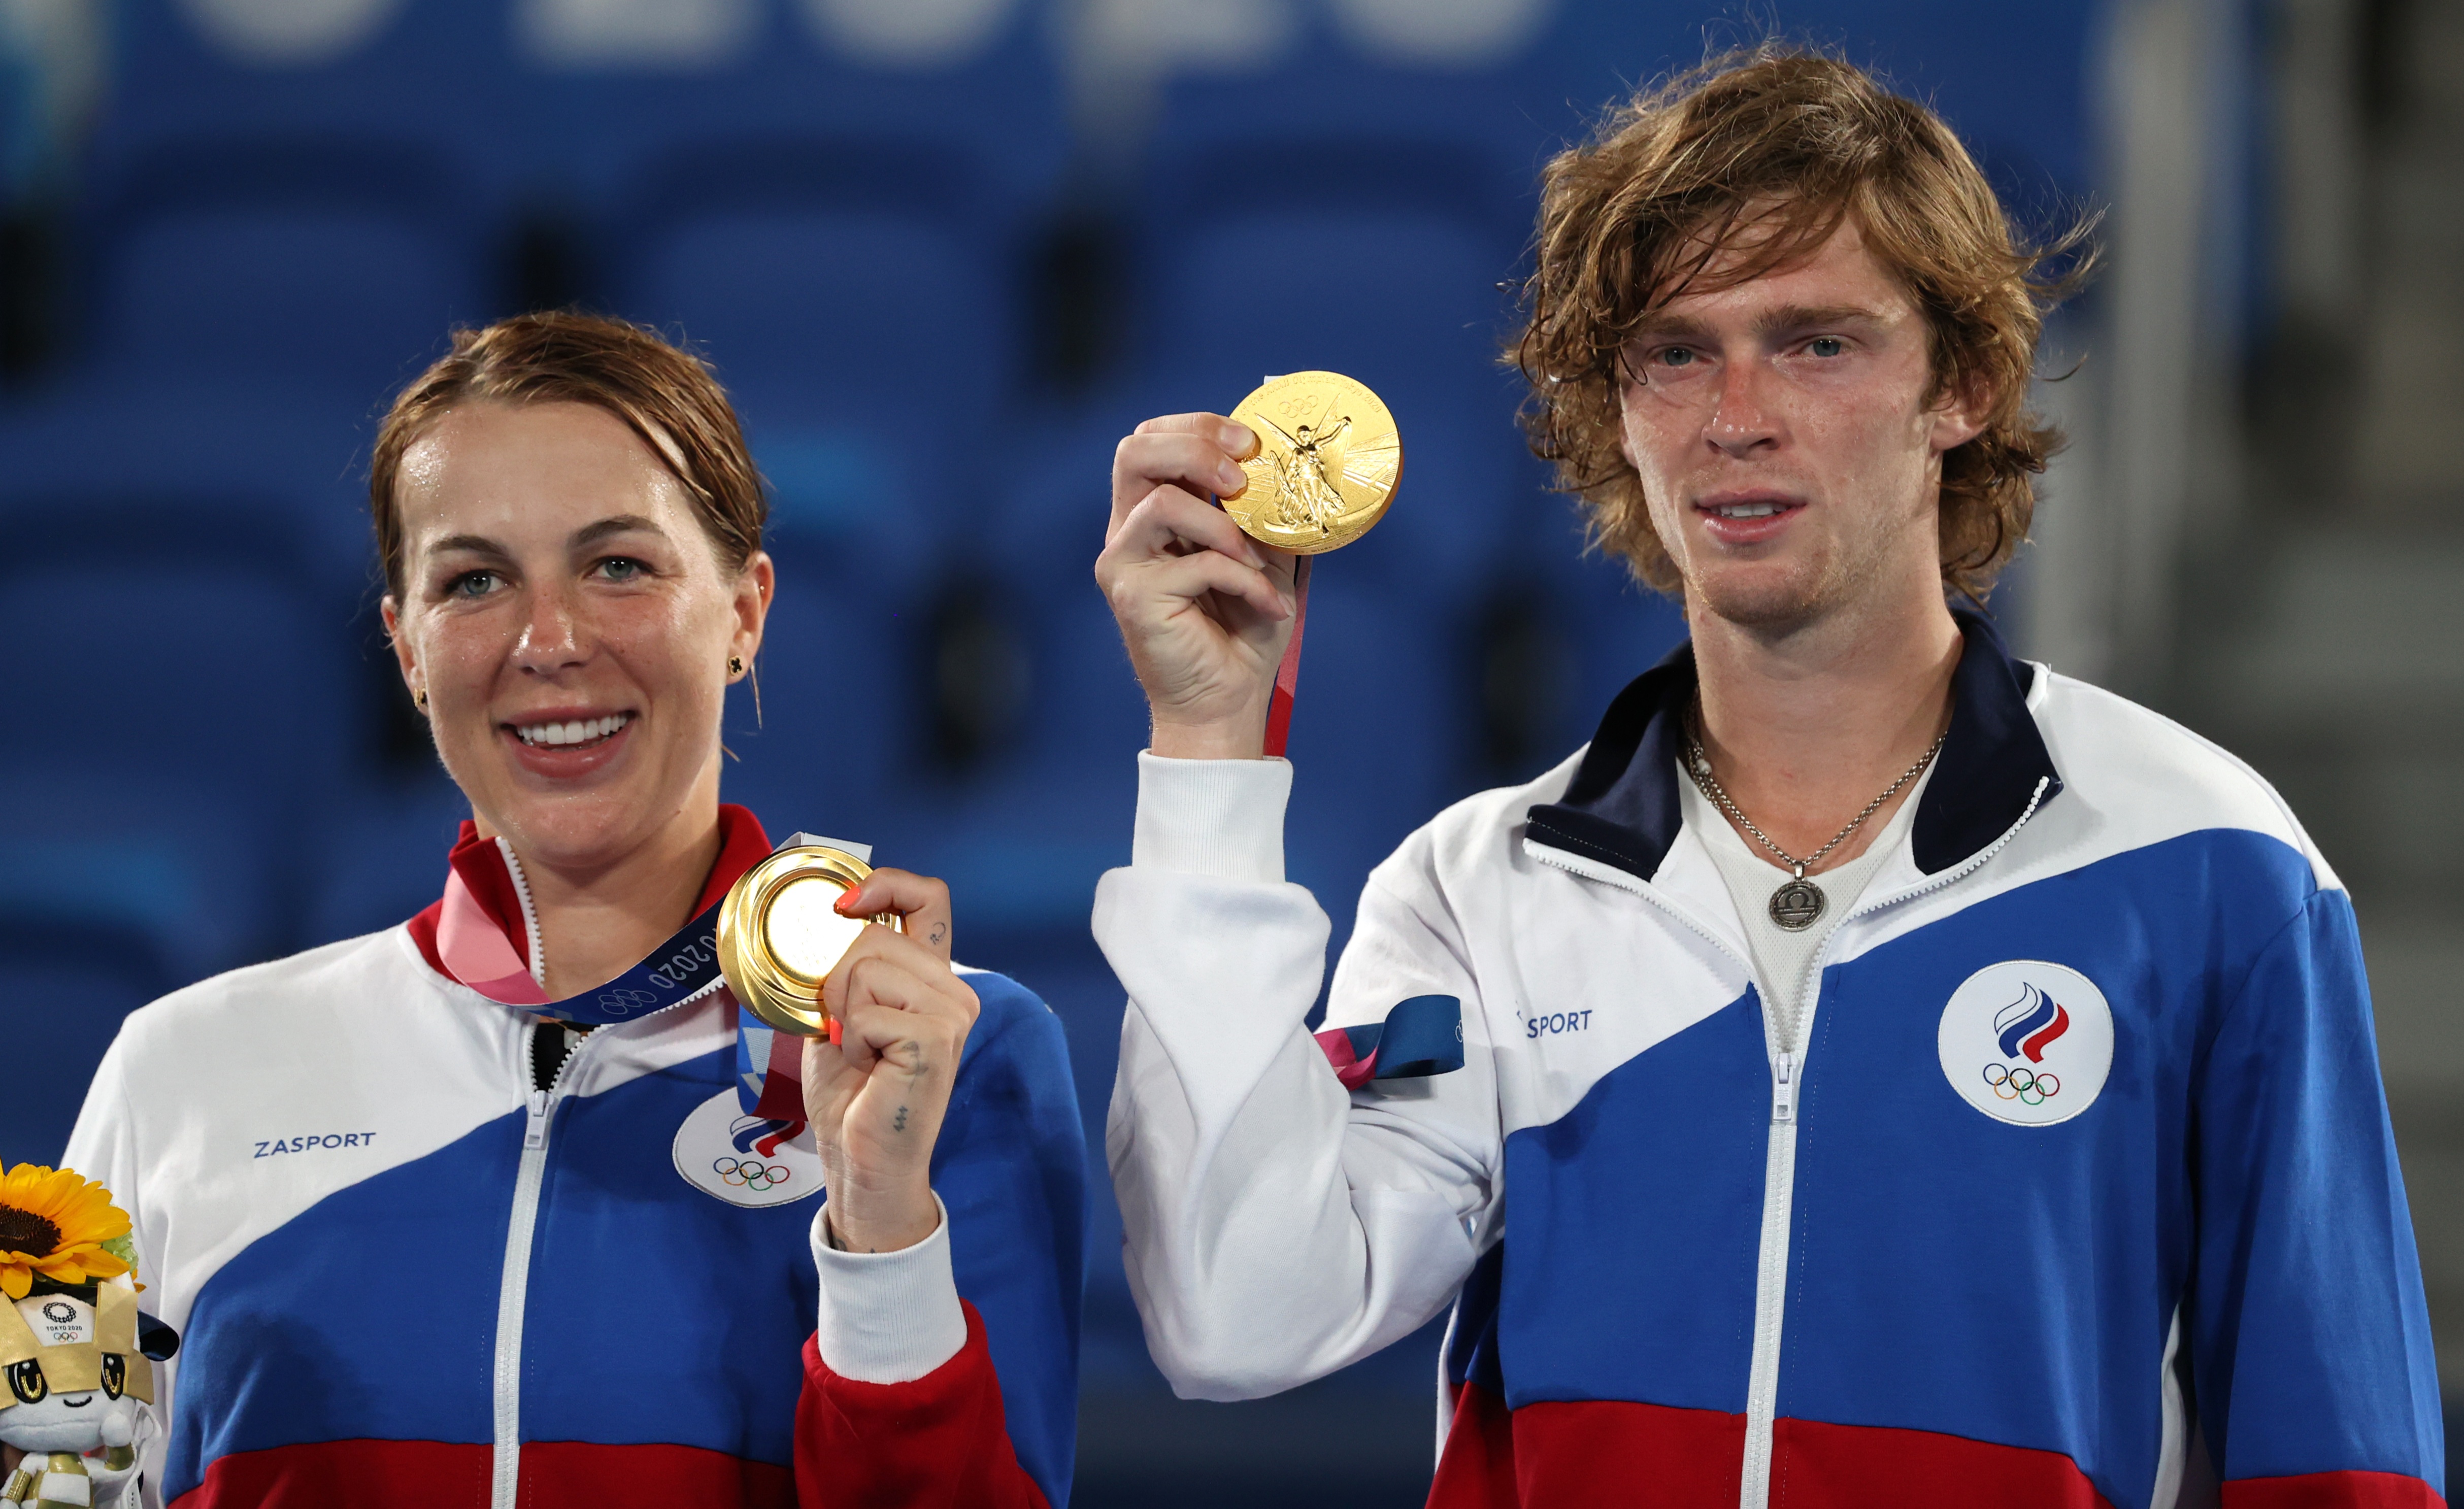 Анастасия Павлюченкова и Андрей Рублев выиграли финал олимпийского теннисного турнира в миксте и заработали золотые медали